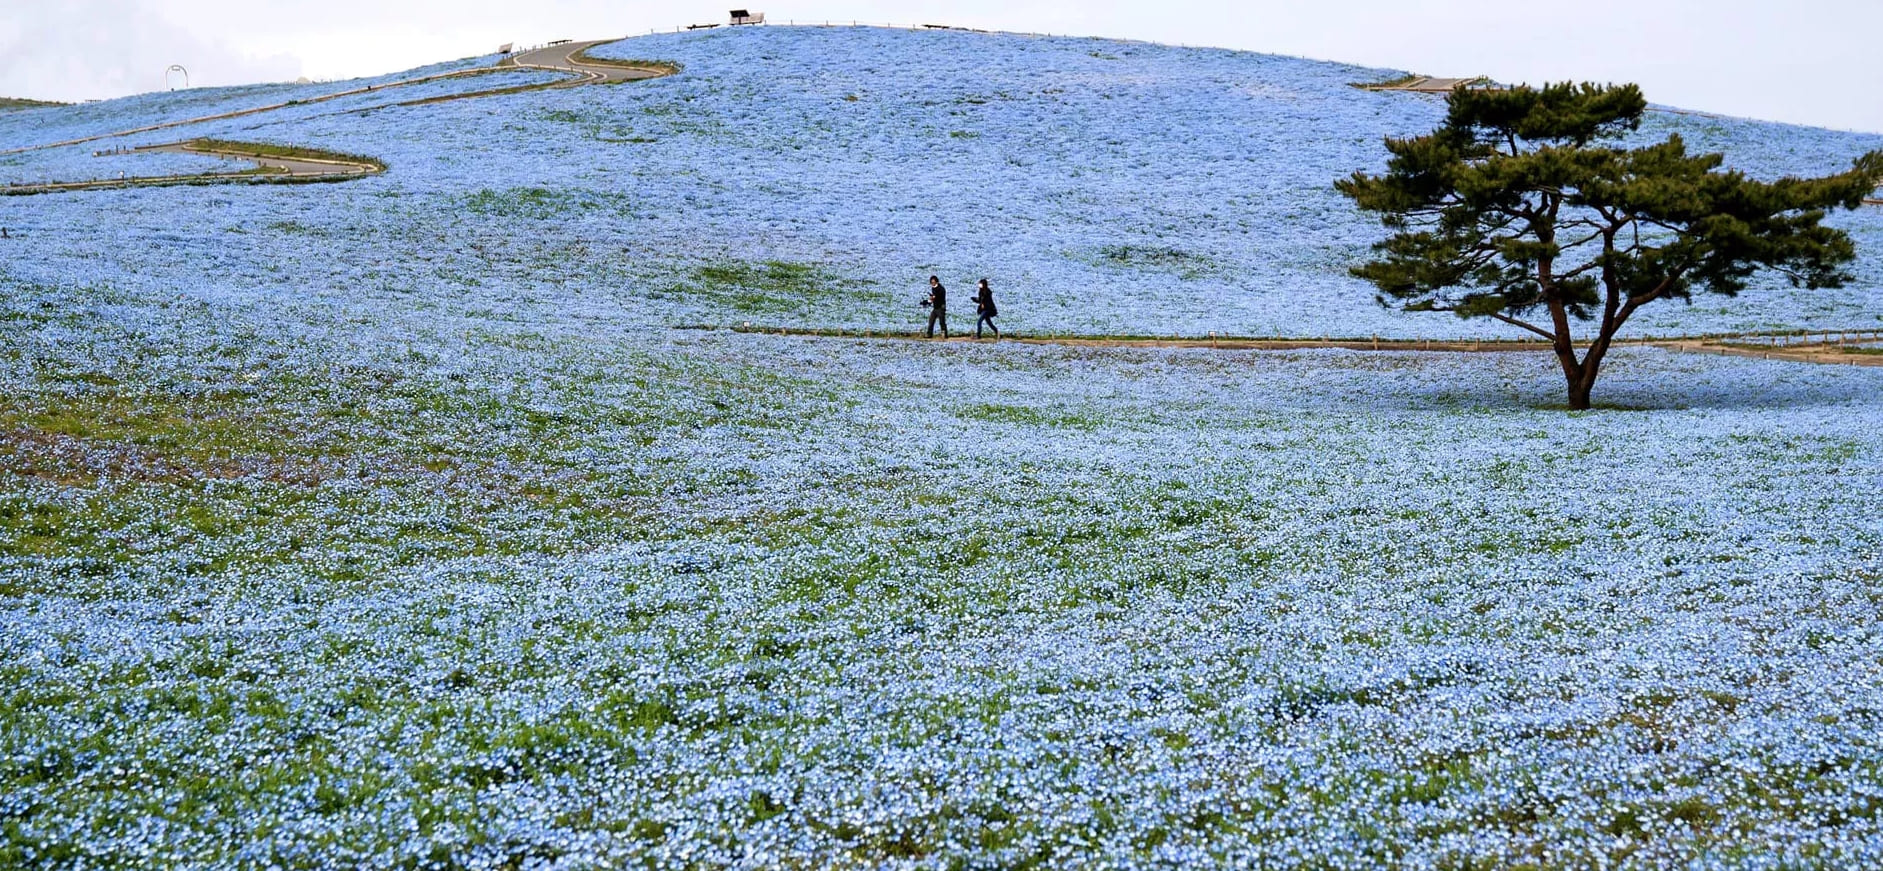 Miljoonat siniset kukat kukkivat tässä japanilaisessa puistossa, ja kuvat ovat hämmästyttäviä